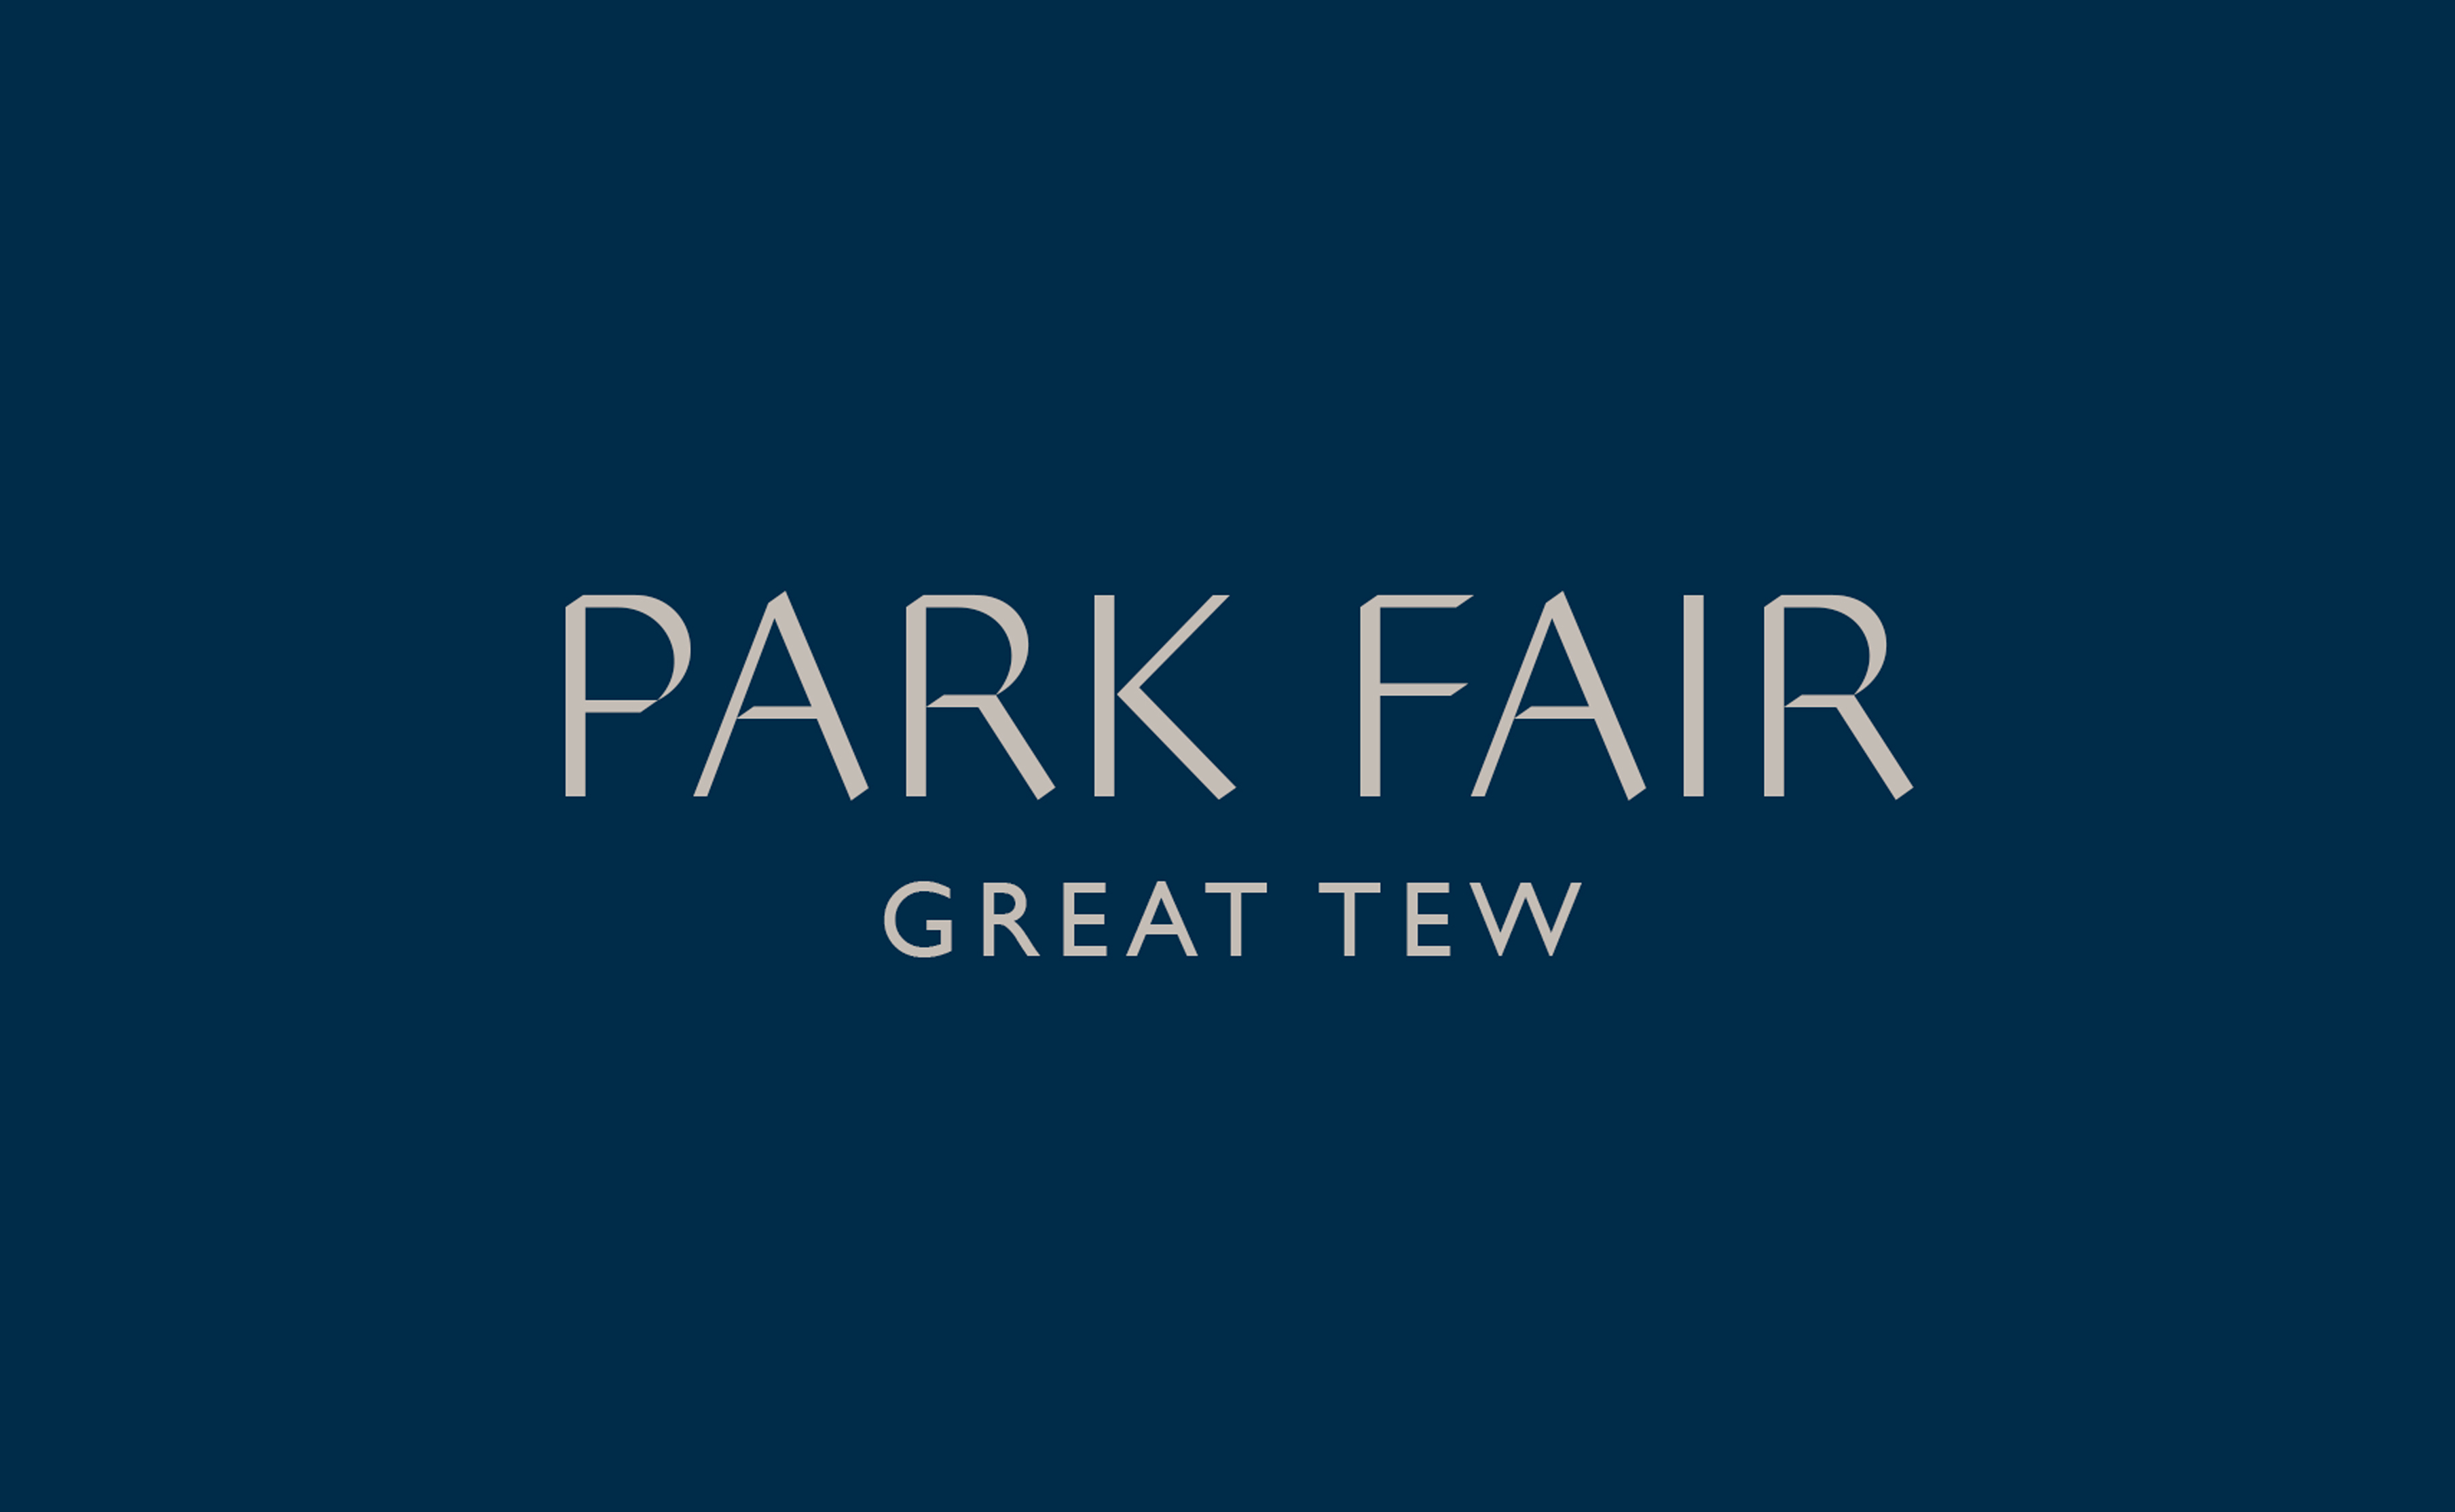 Park Fair Great Tew